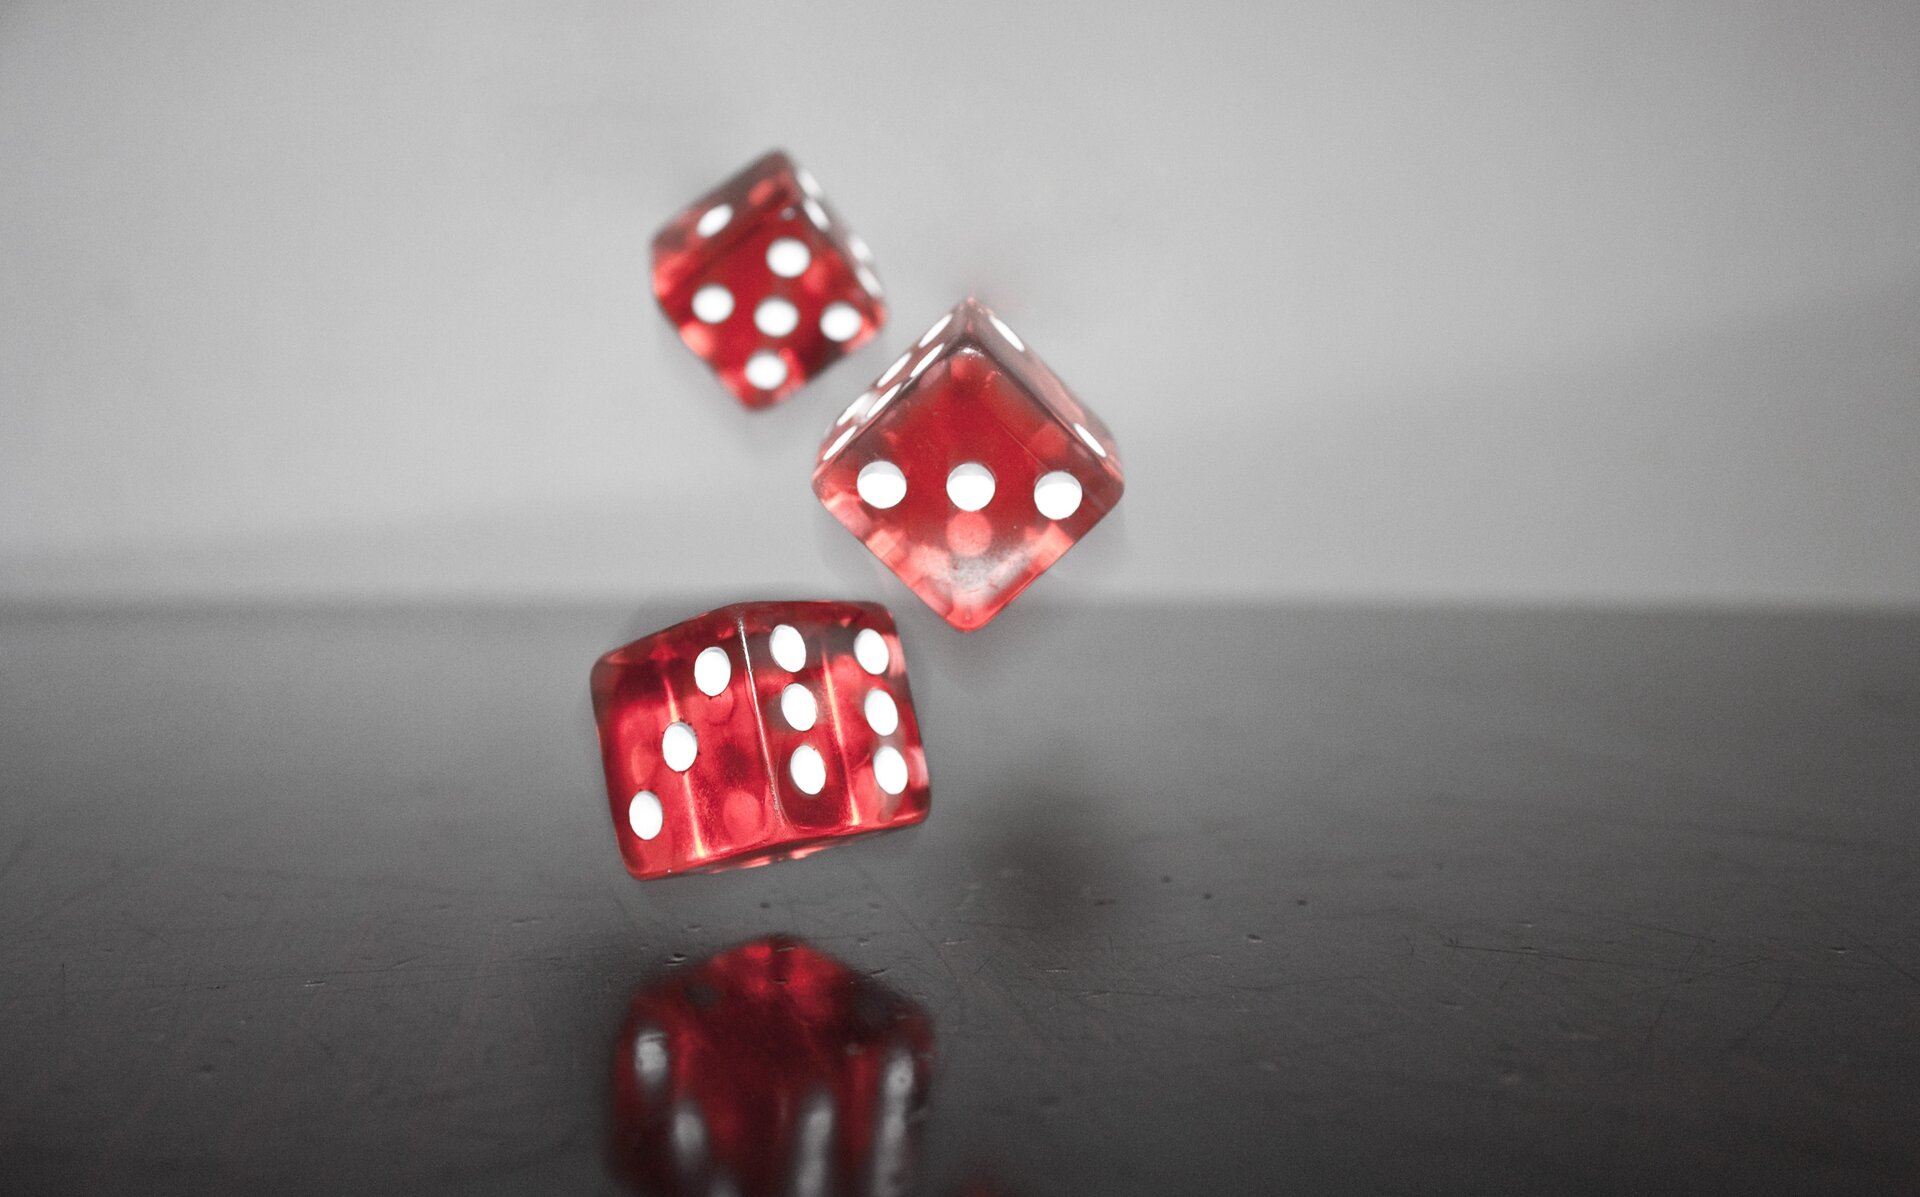 Zdjęcie przedstawia rzucone kostki do gry. Są to trzy czerwone kostki z białymi oczkami.